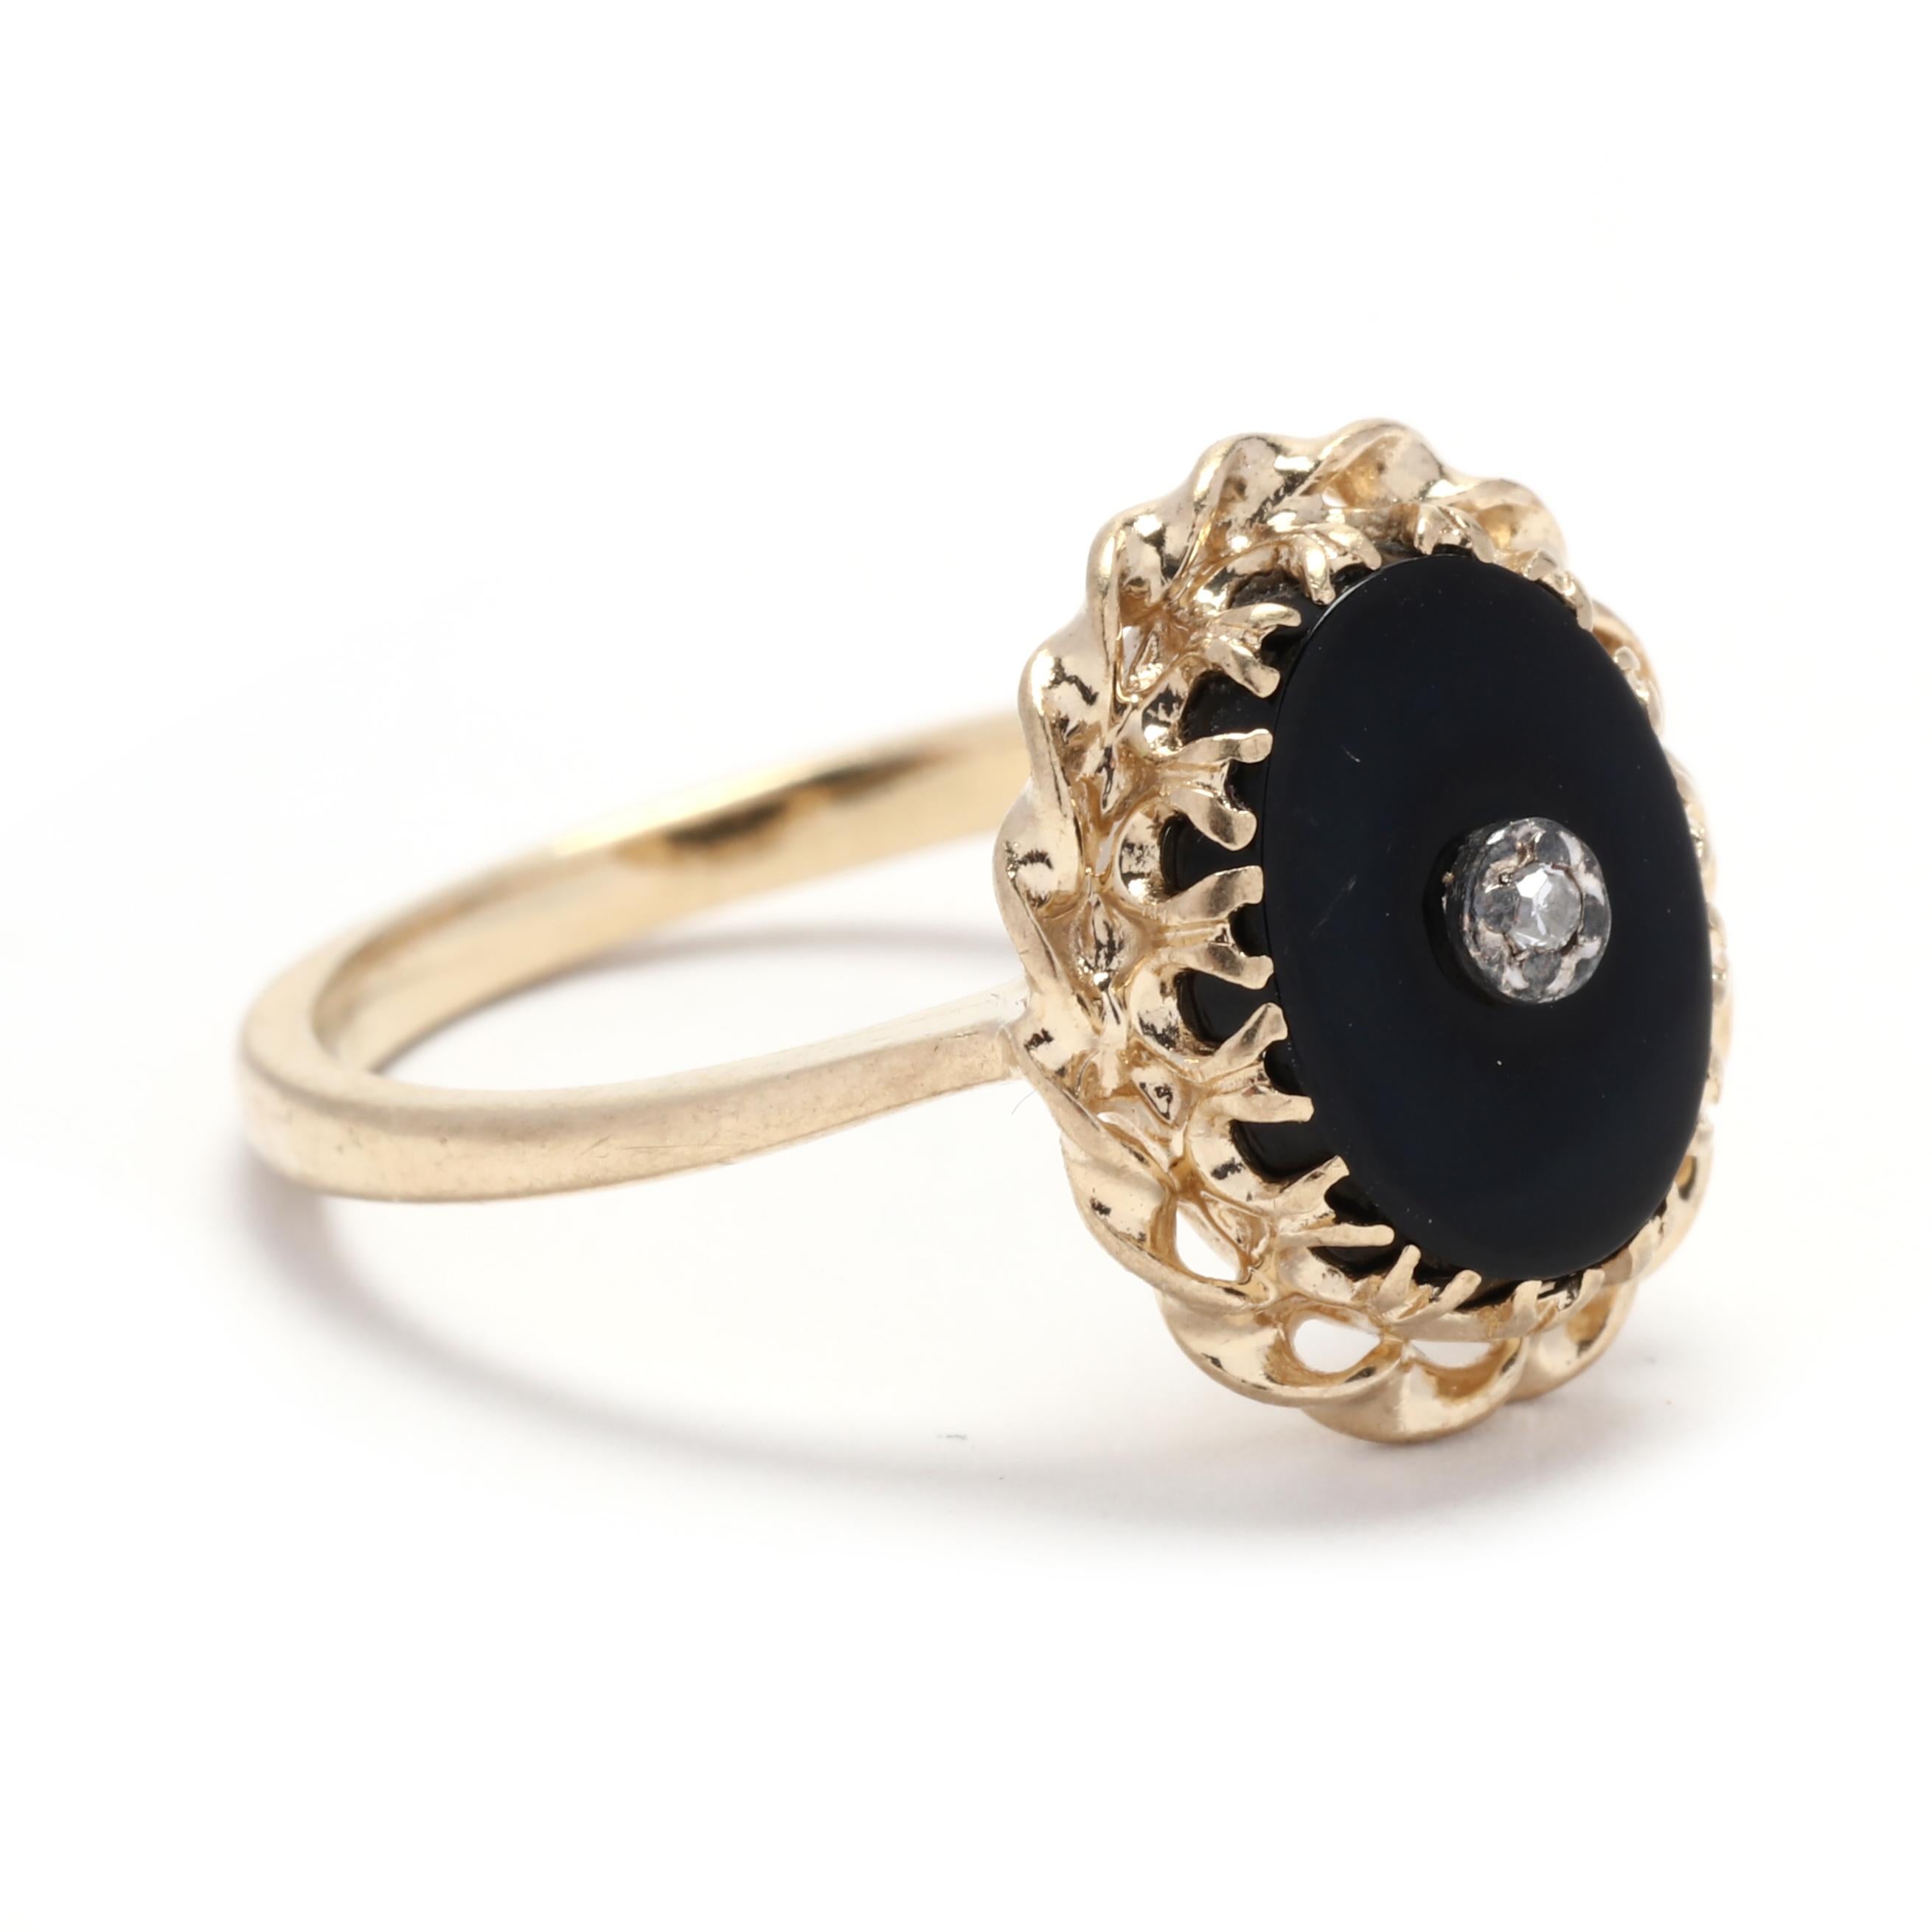 Dieser Ring aus 10 Karat Gelbgold ist mit einem wunderschönen ovalen schwarzen Onyx besetzt. Die tiefschwarze Farbe des Onyx bildet einen auffälligen Kontrast zum Gelbgold und verleiht dem Gesamtdesign eine dramatische Note. Dieser Ring ist in der